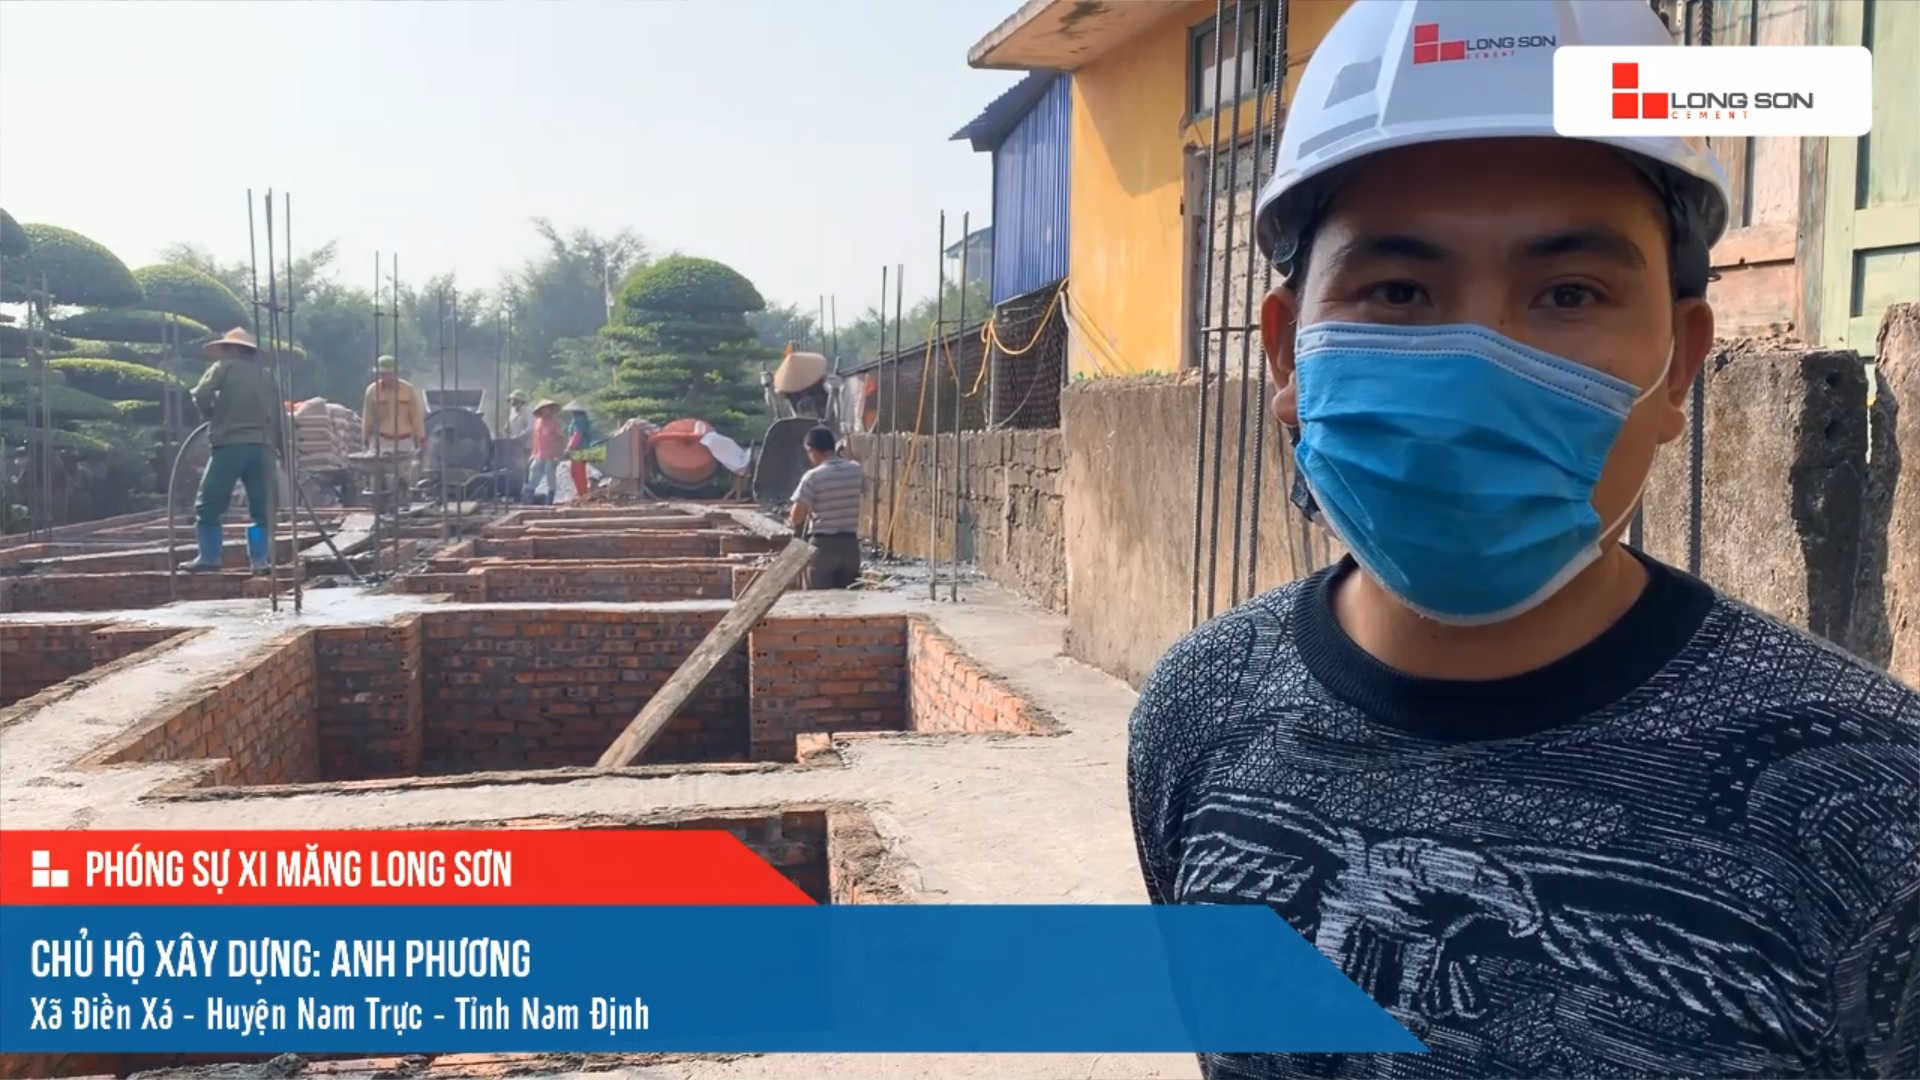 Phóng sự công trình sử dụng xi măng Long Sơn tại Nam Định ngày 12/12/2021